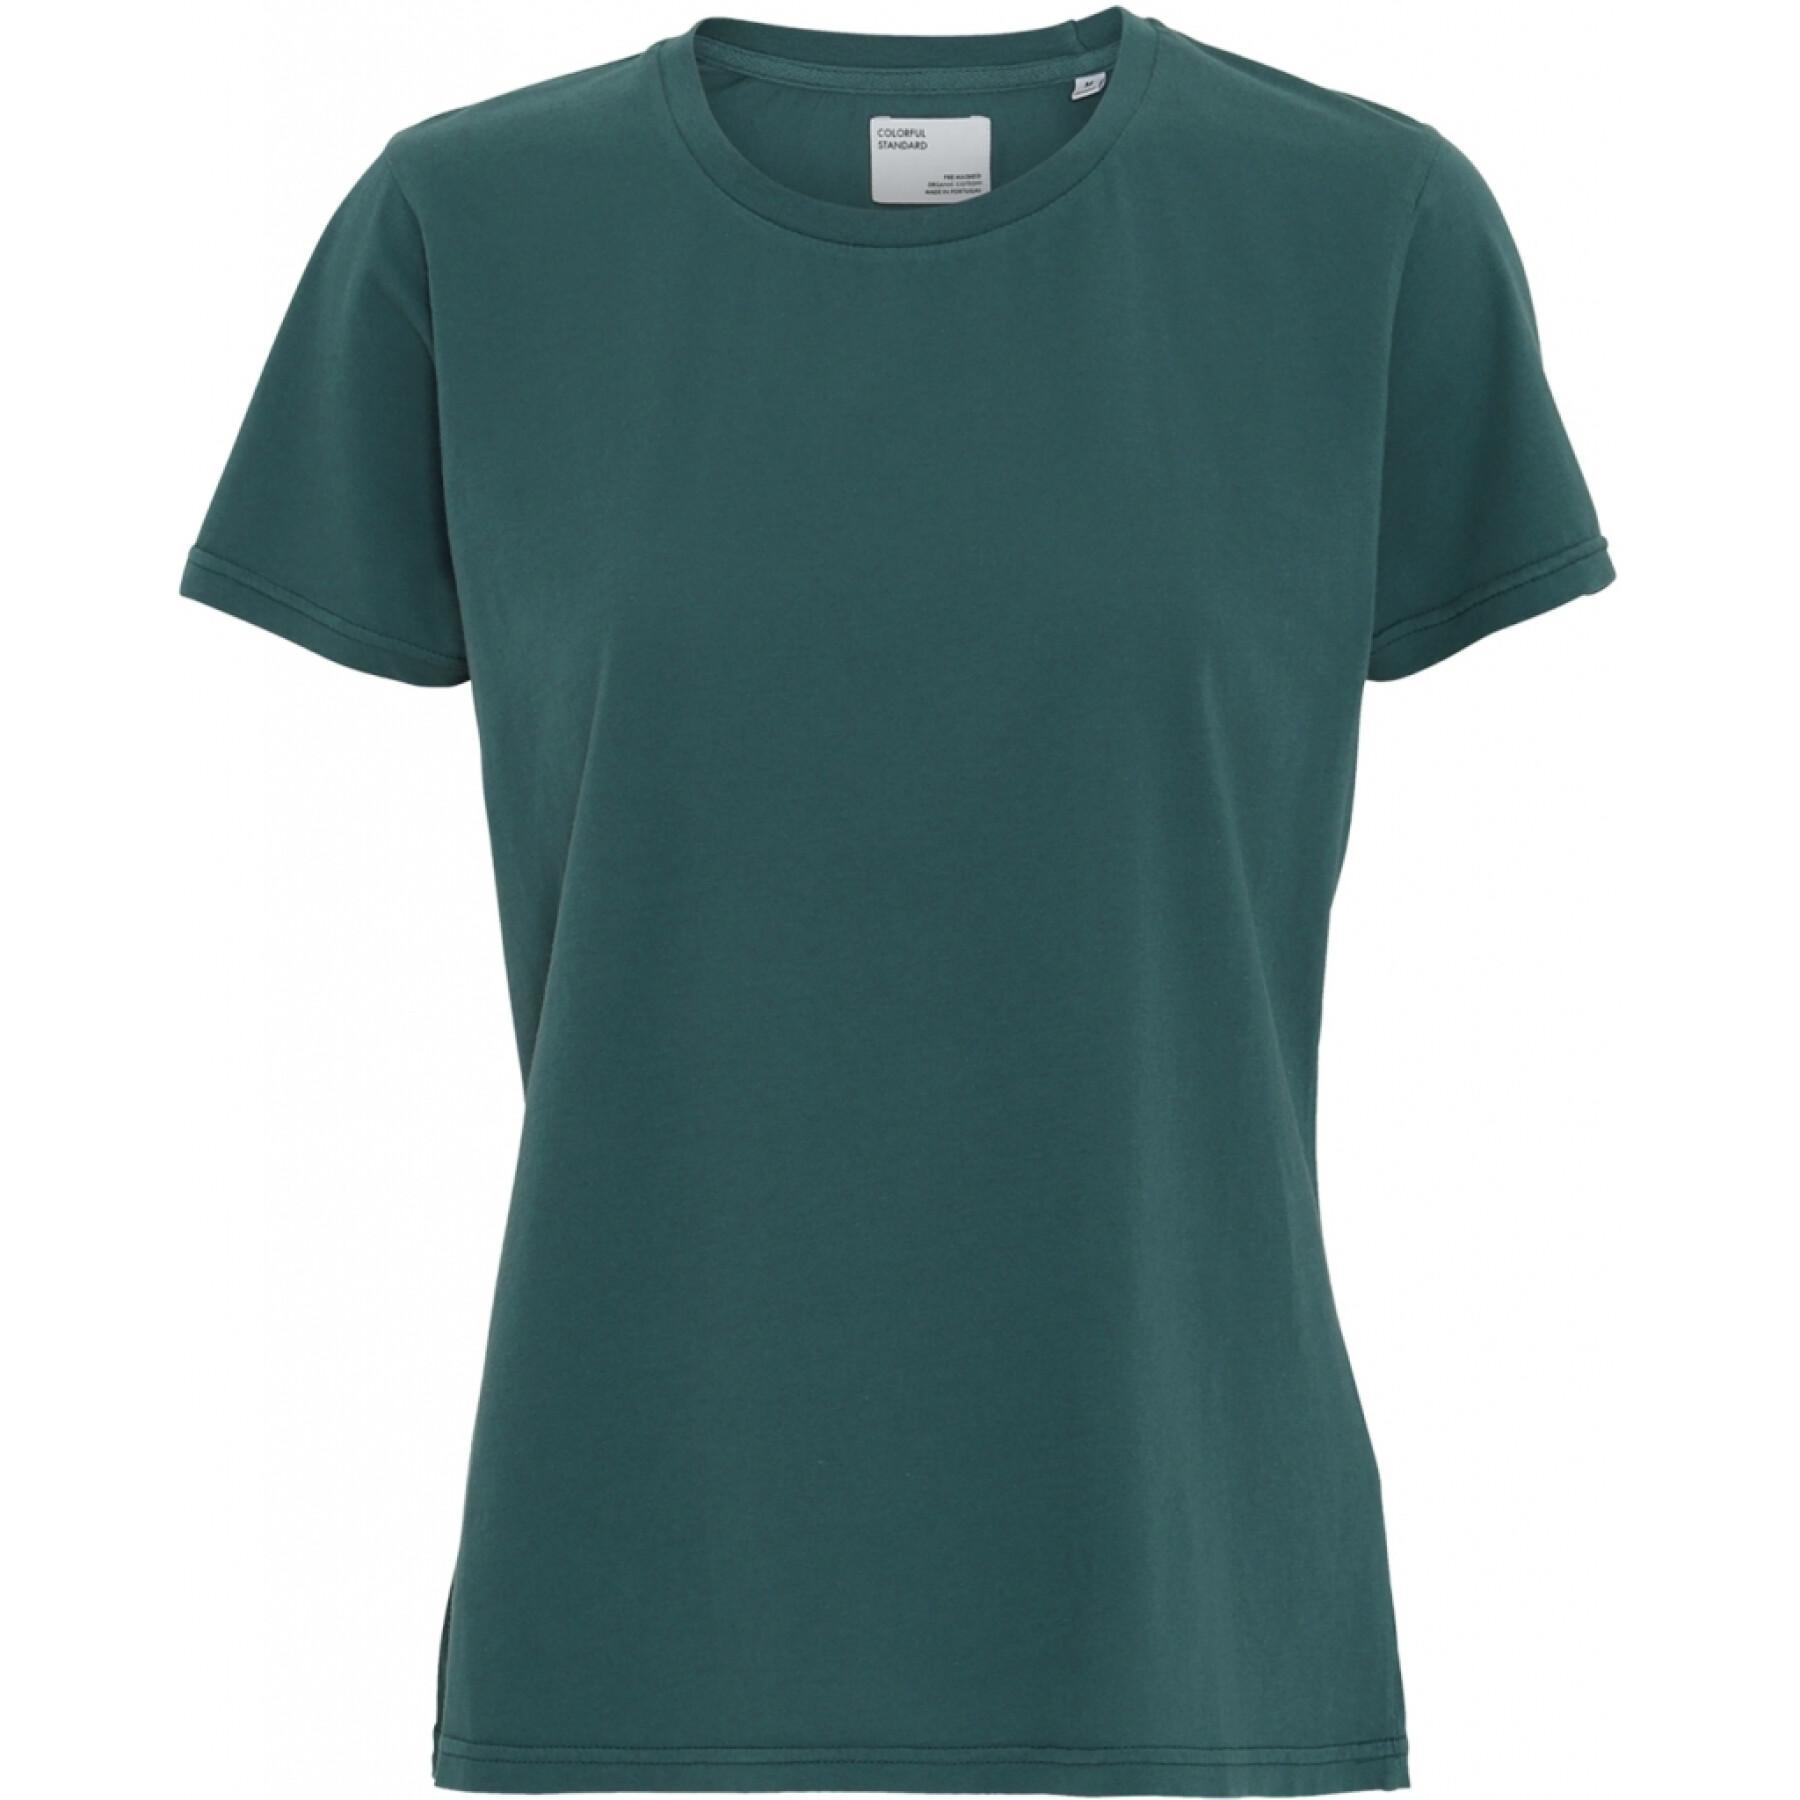 Dames-T-shirt Colorful Standard Light Organic ocean green